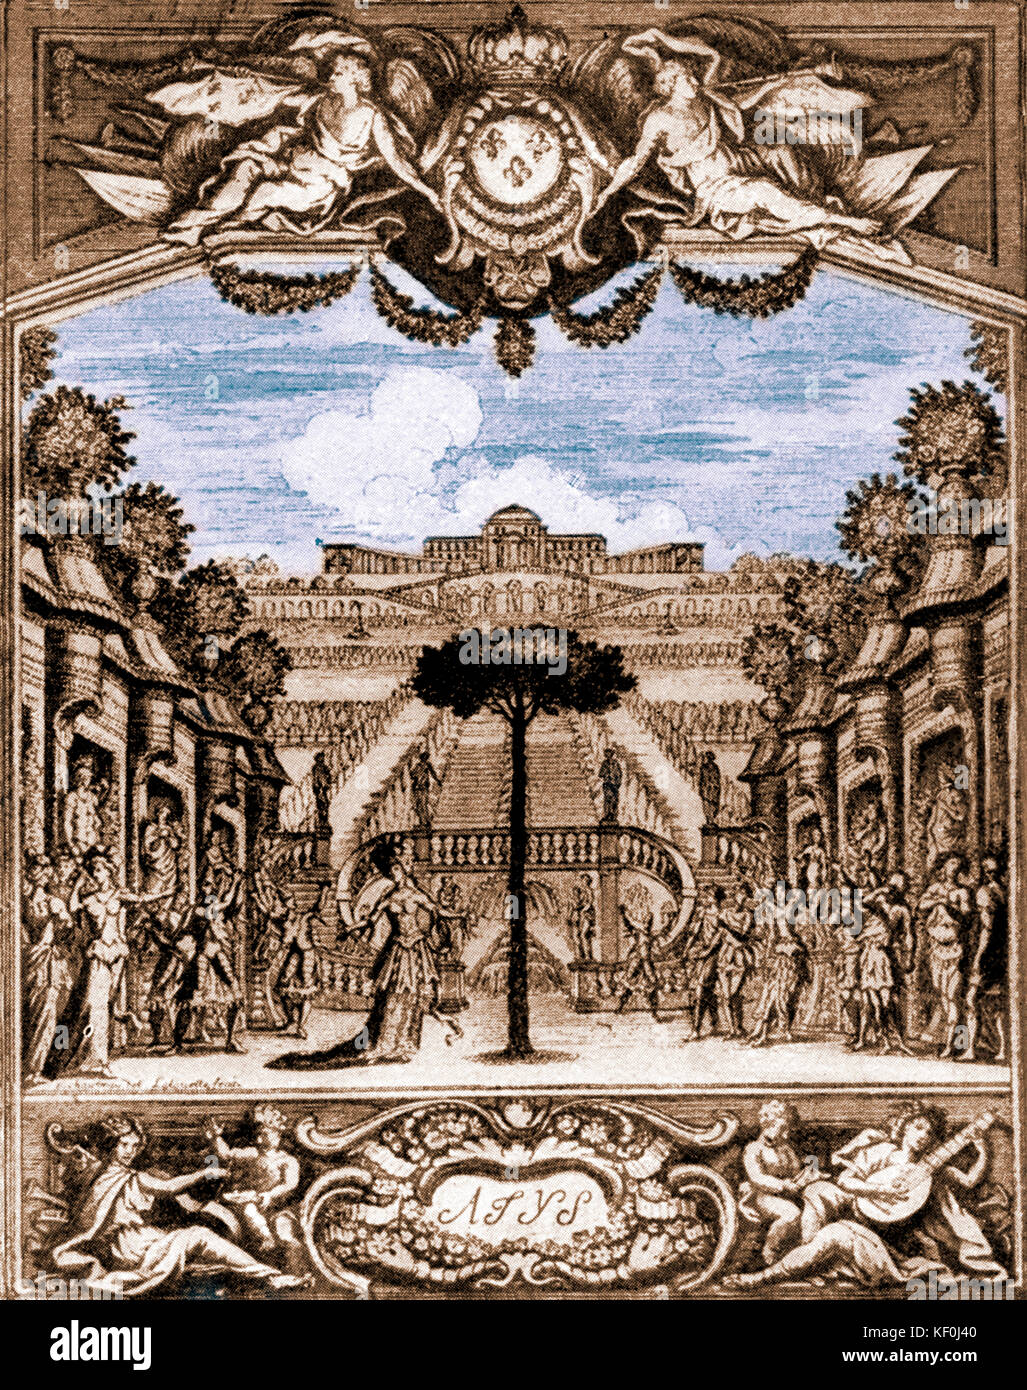 Atys' da Jean-Baptiste Lully. Titlepage al 1676 opera. J-BL francese compositore italiano 28 novembre 1632 - 22 Marzo 1687. Versione oscurata. Foto Stock